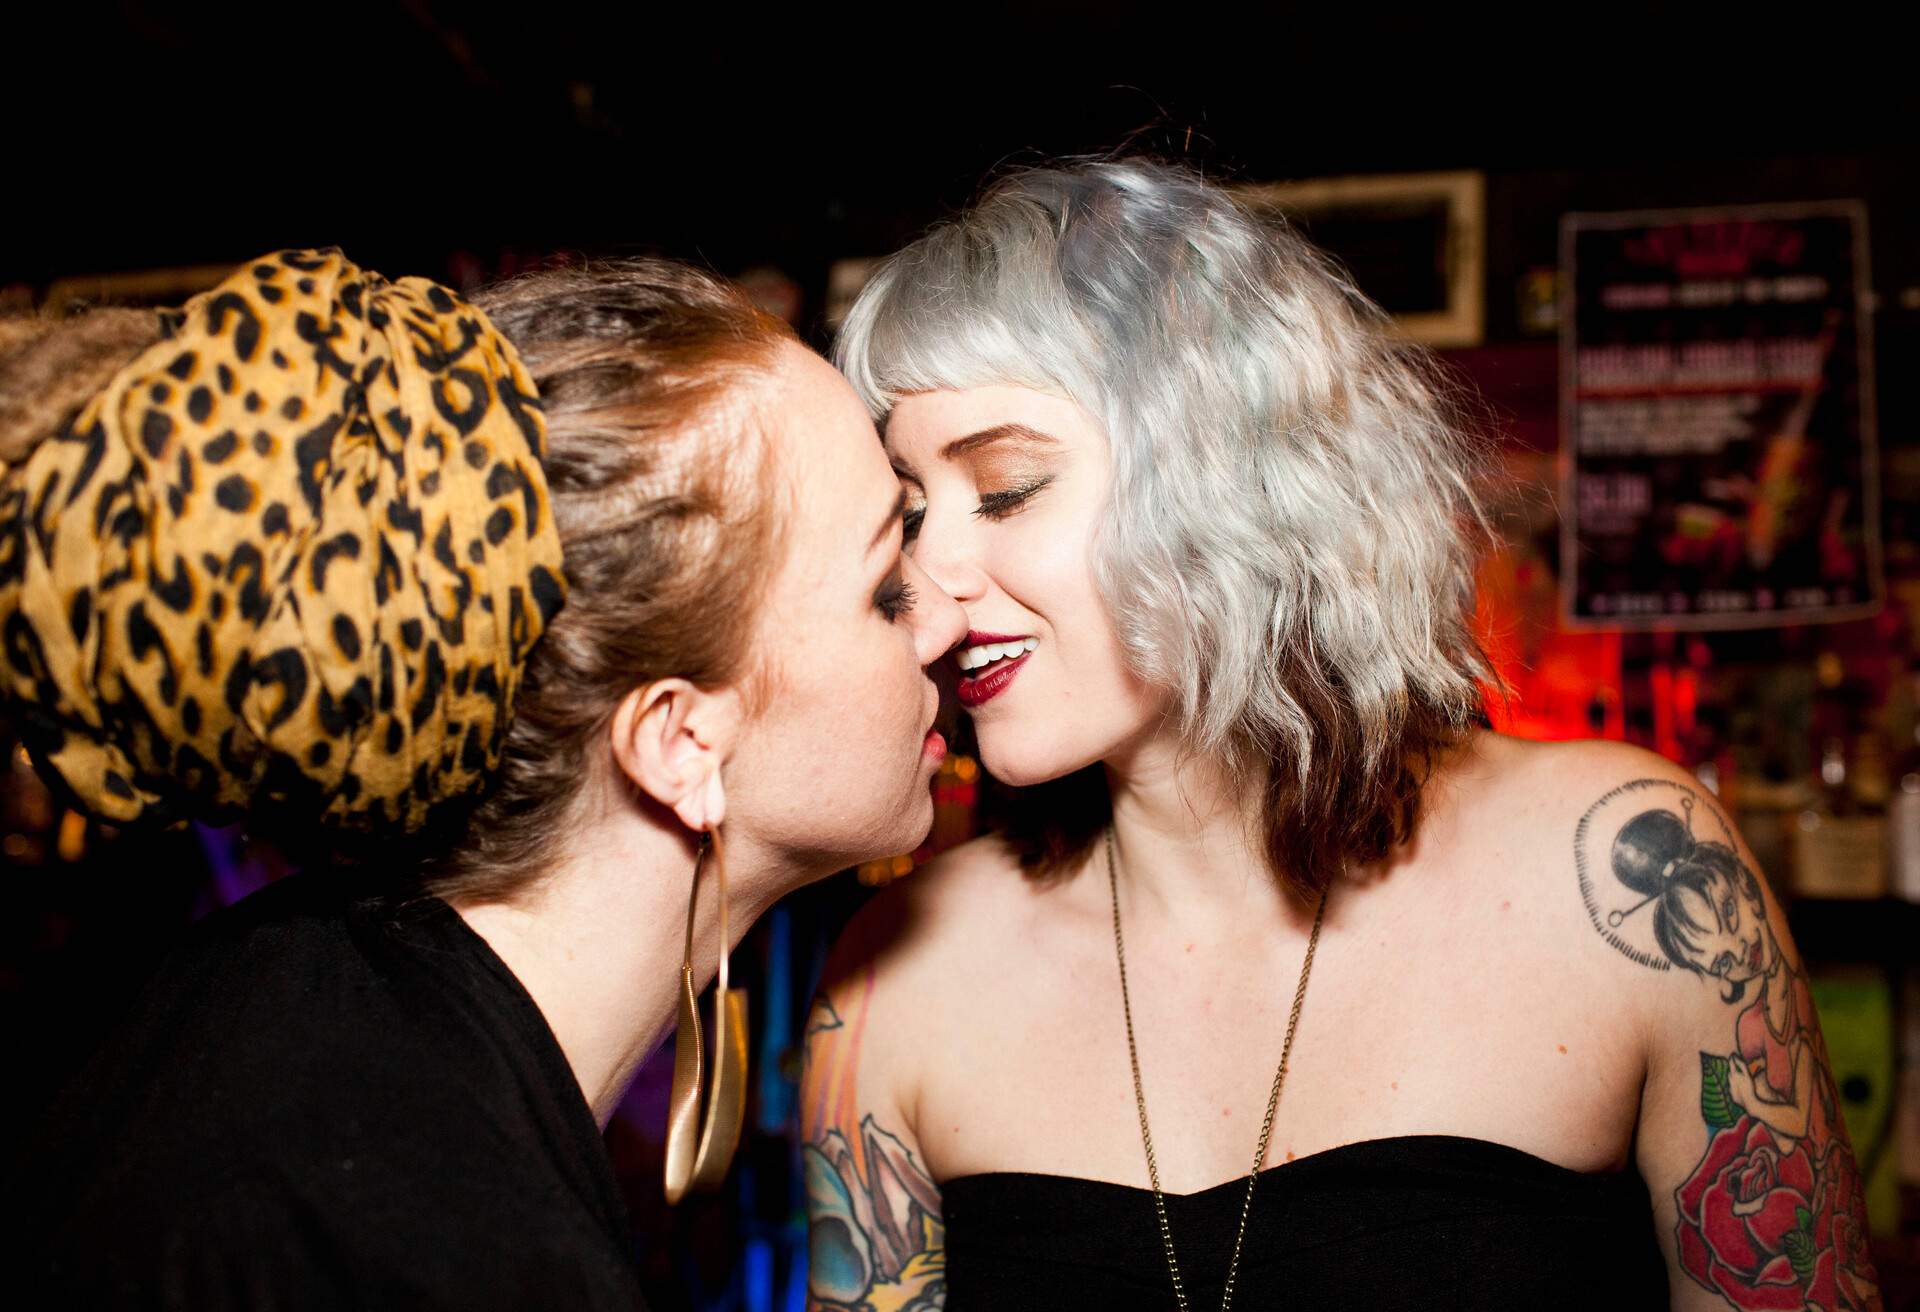 A female couple kissing inside a bar, LGBTQ nightlife